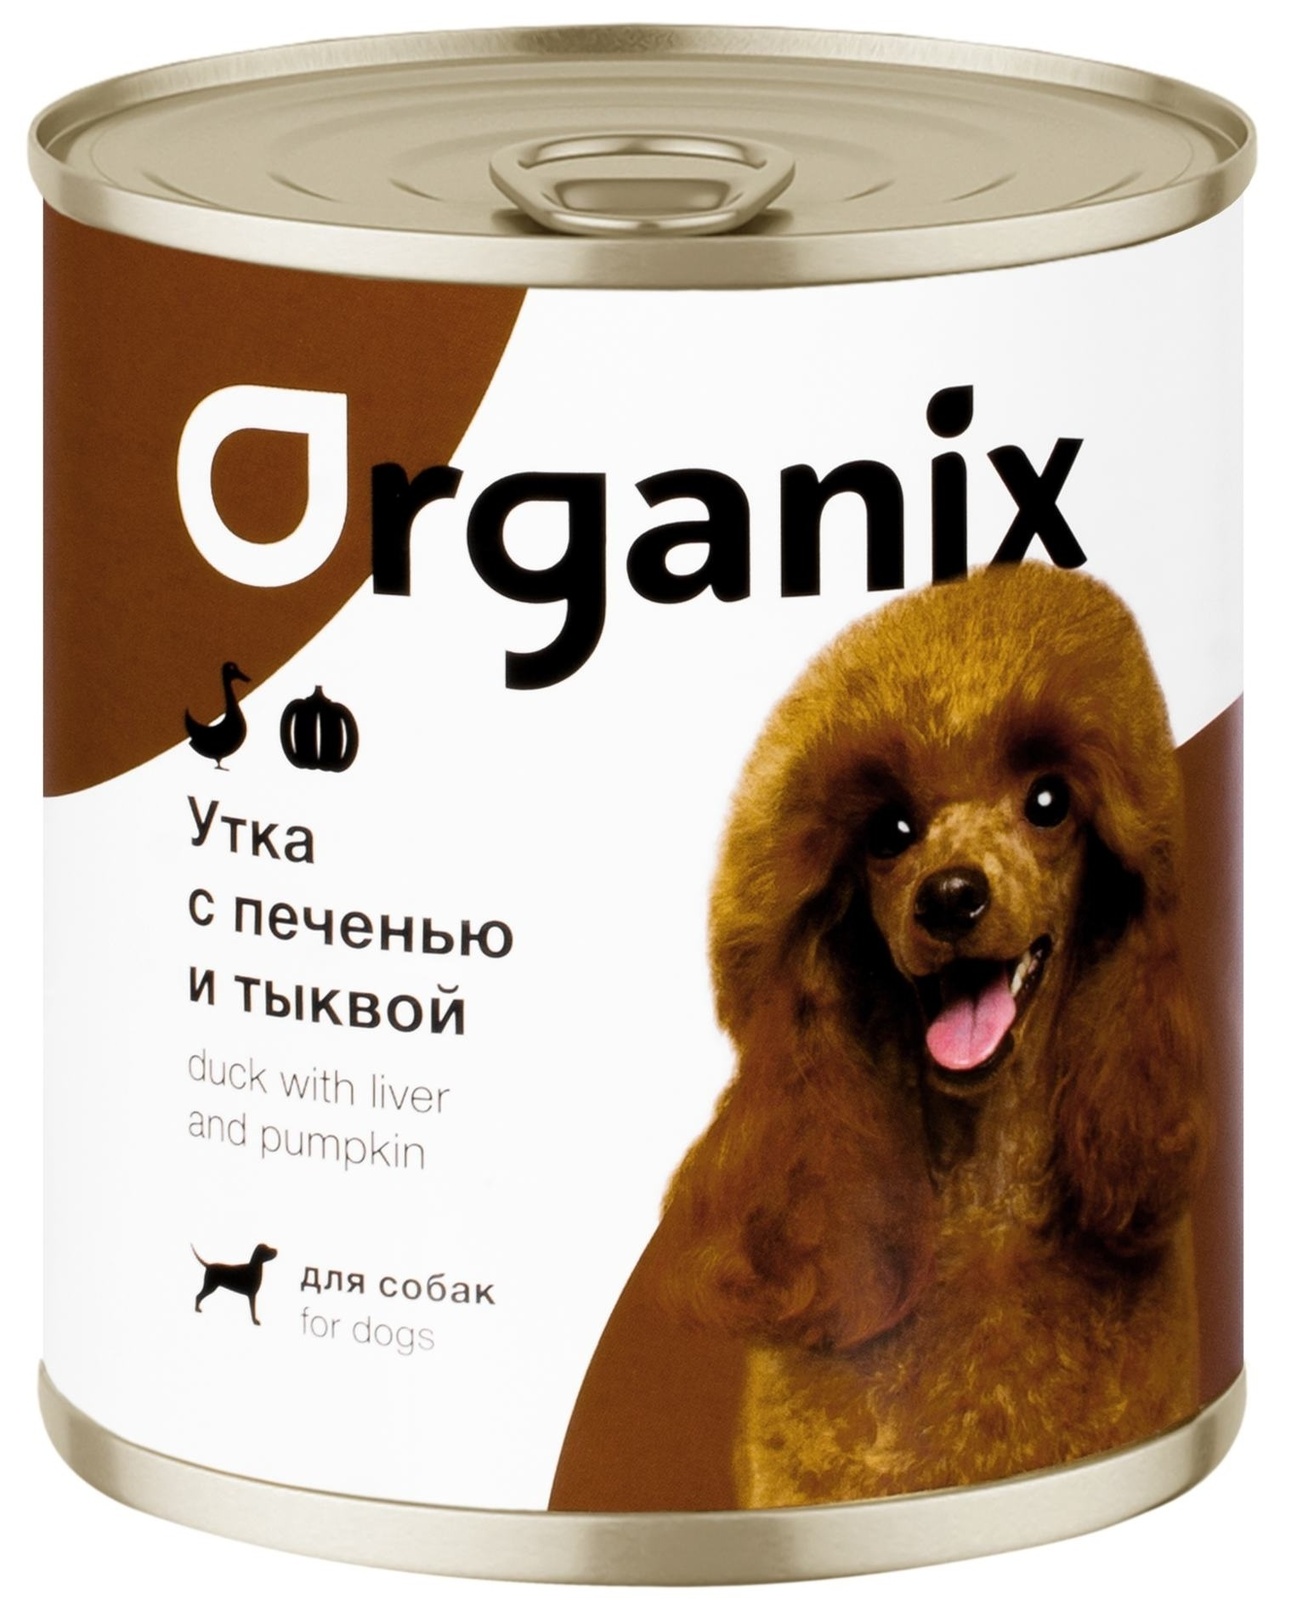 Organix консервы Organix консервы для собак Сочная утка с печенью и тыквой (100 г) organix консервы д собак с ягненком и печенью паштет 100 г